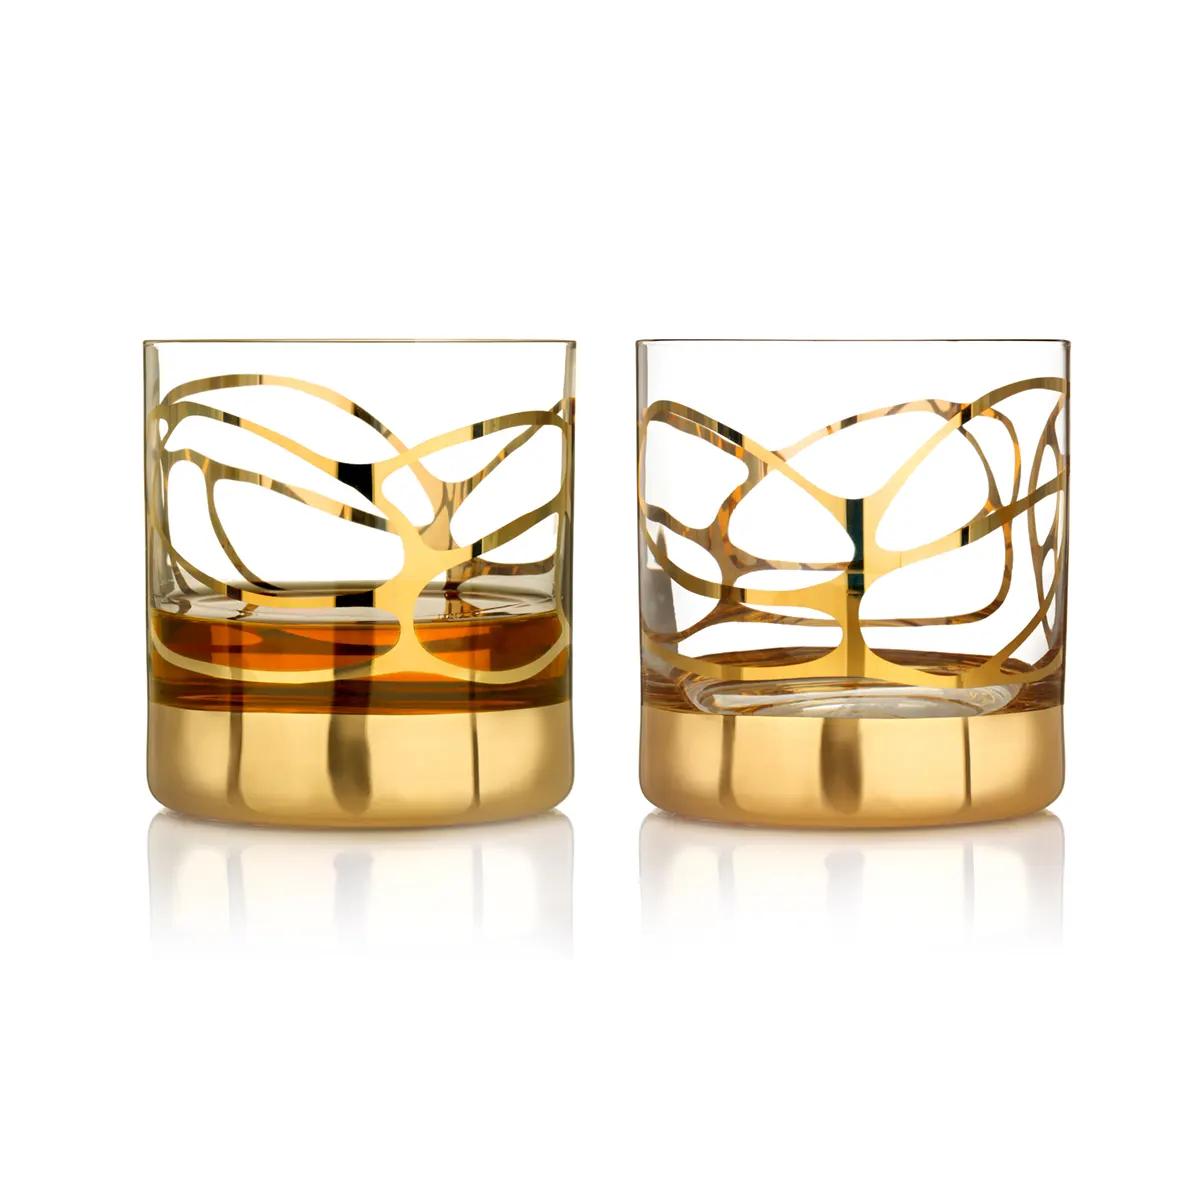 Eisch Whiskyglas Set Stargate - Gold - 2 Stück in Geschenkröhre